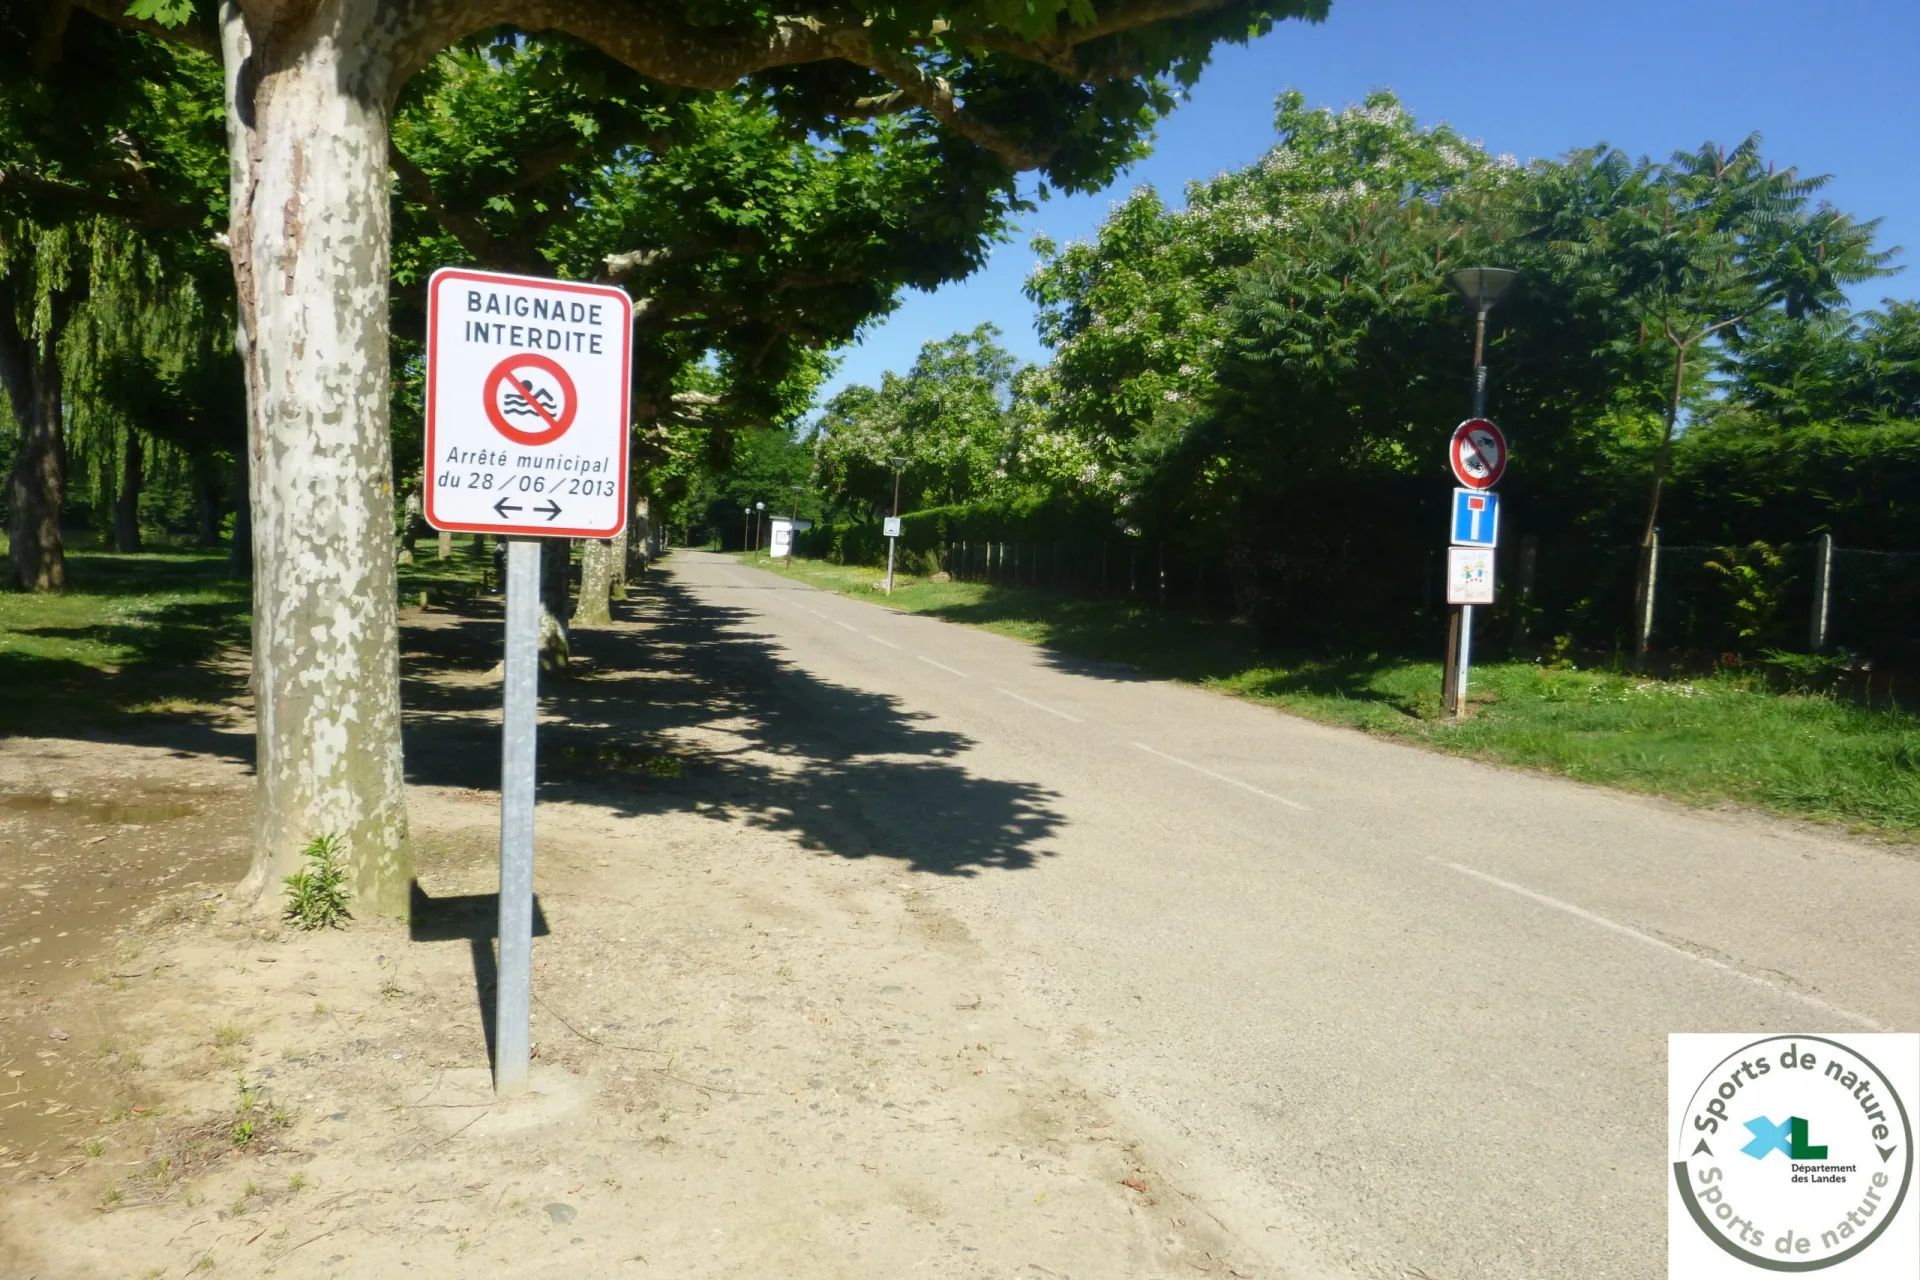 Itinéraire Nautique de l’Adour :  Cazeres sur Adour – Grenade sur Adour